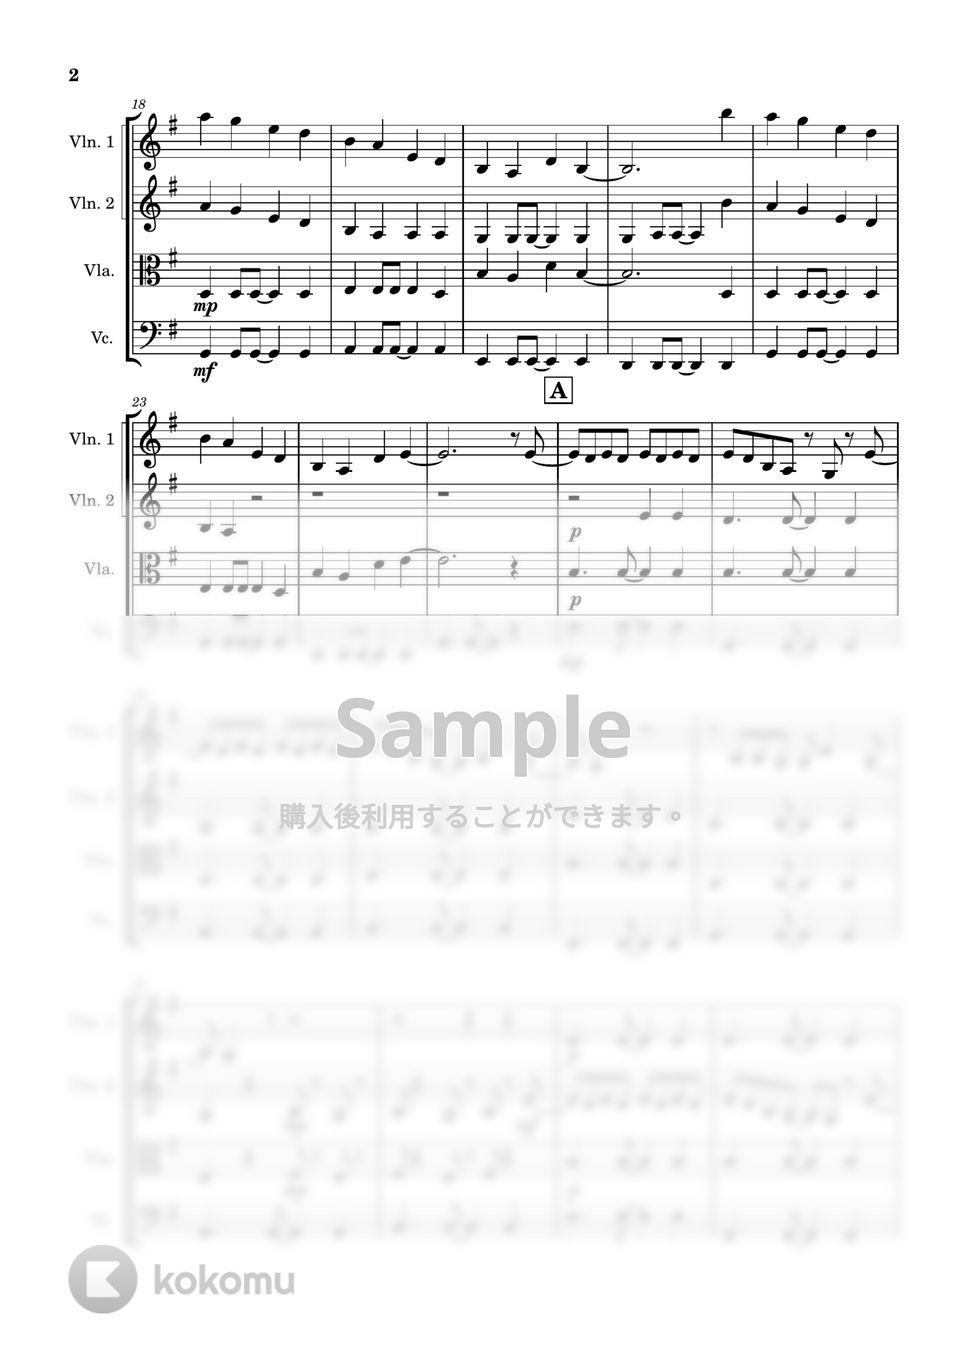 Ado - 新時代 (弦楽四重奏) by Cellotto